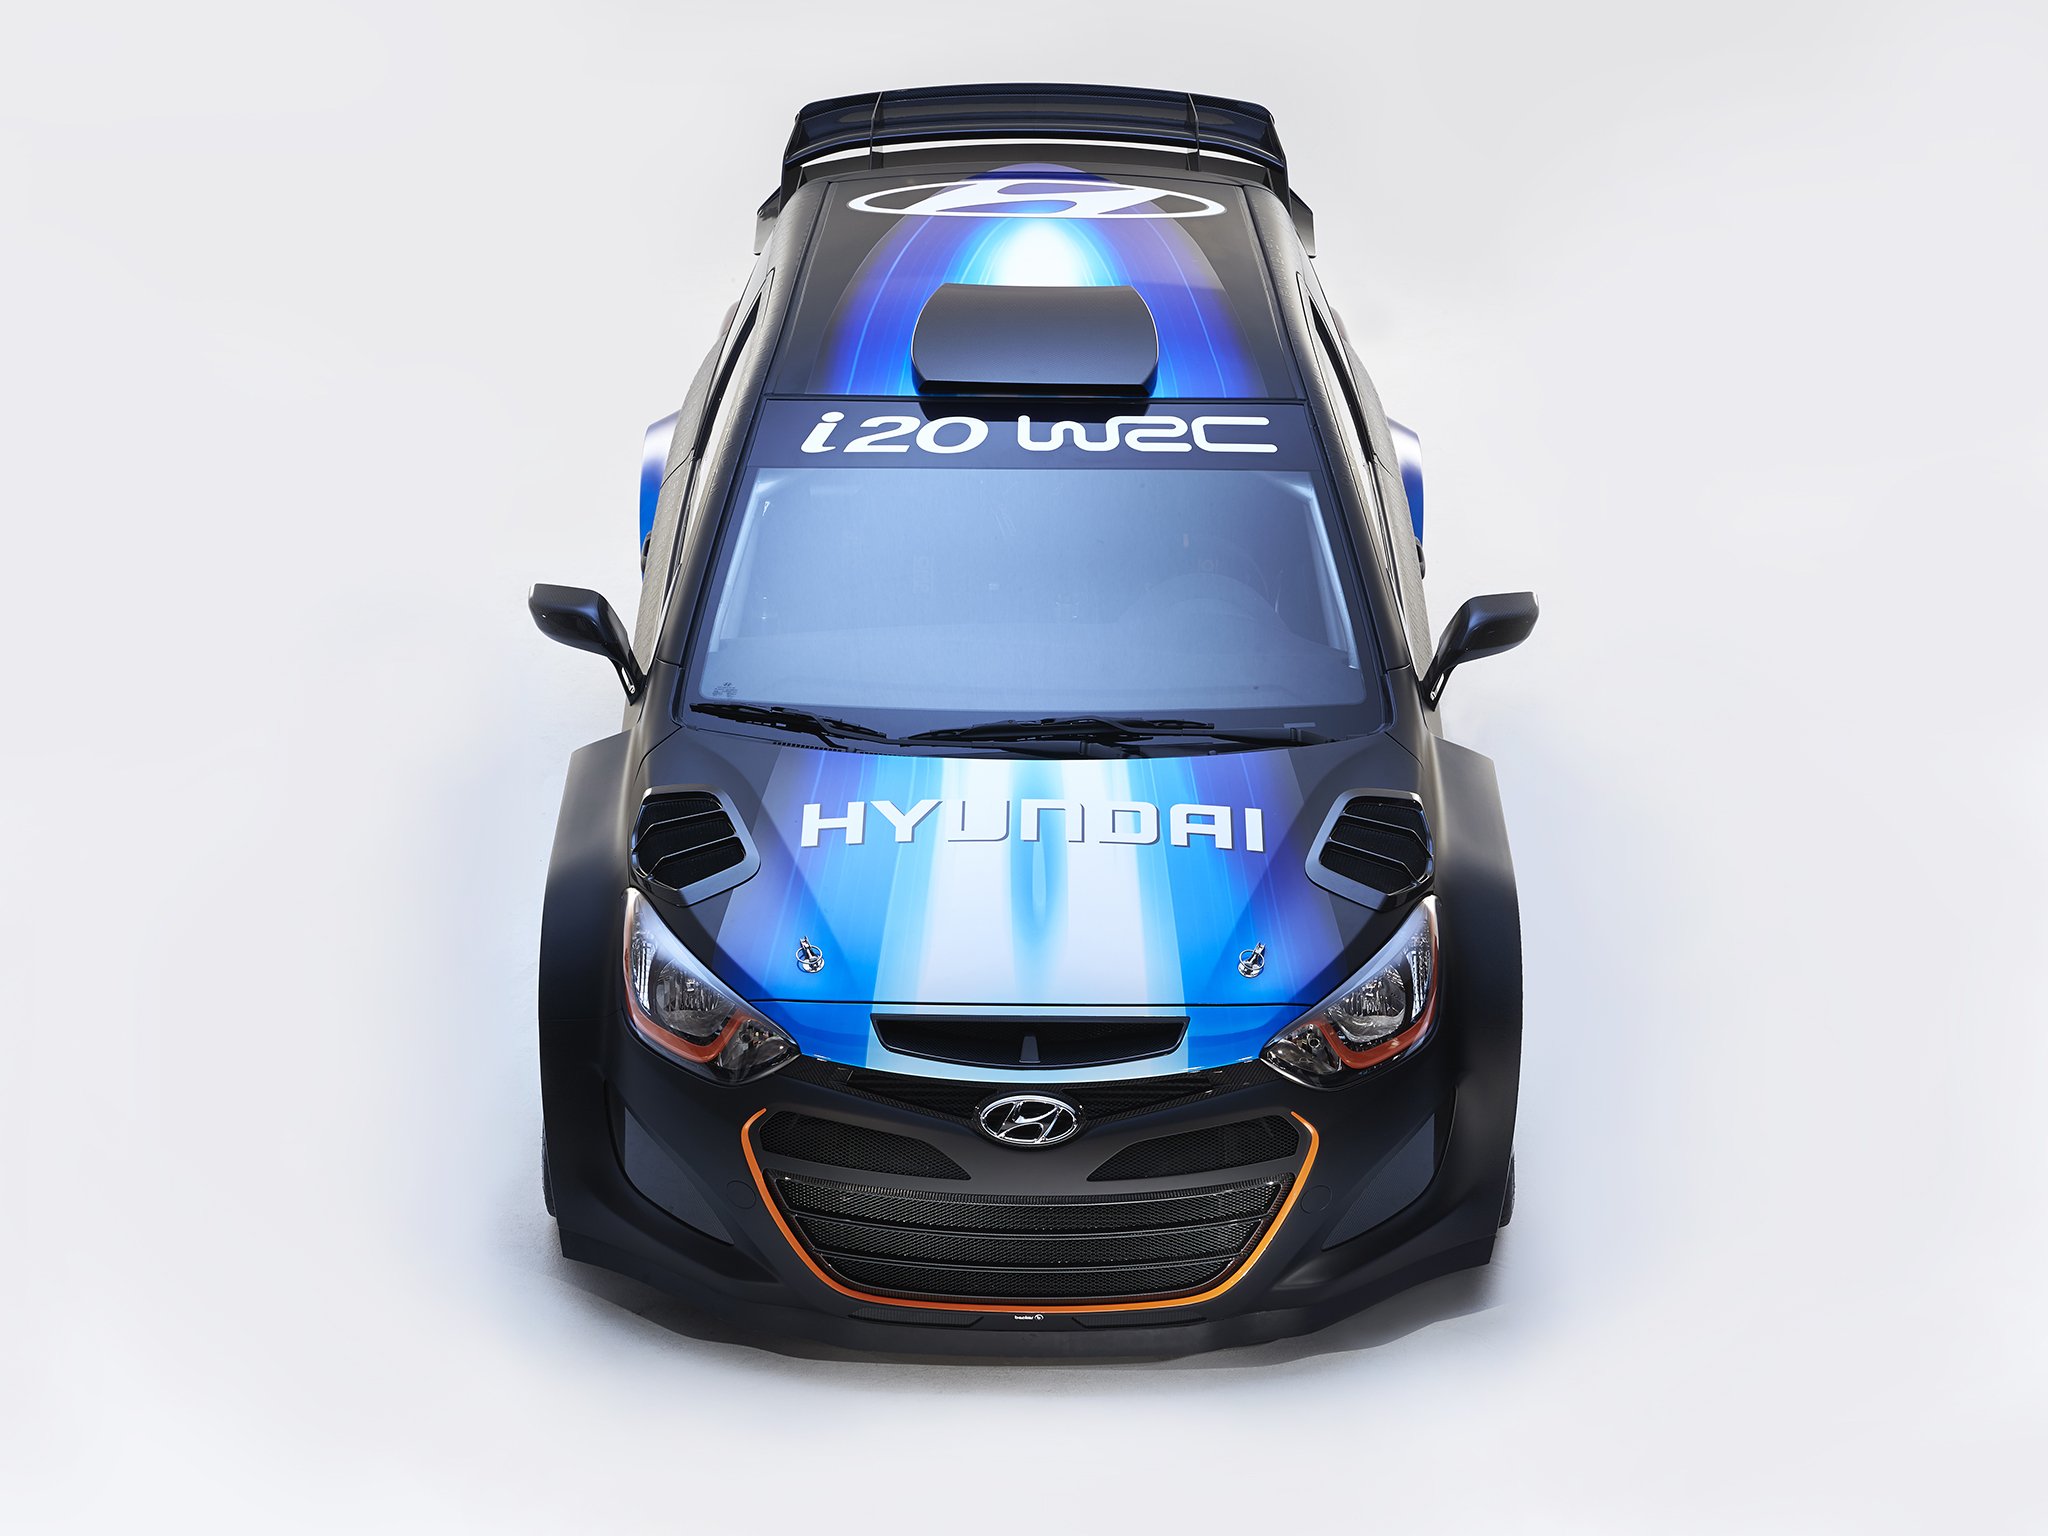 2013, Hyundai, I20, Wrc, Show, Race, Racing Wallpaper